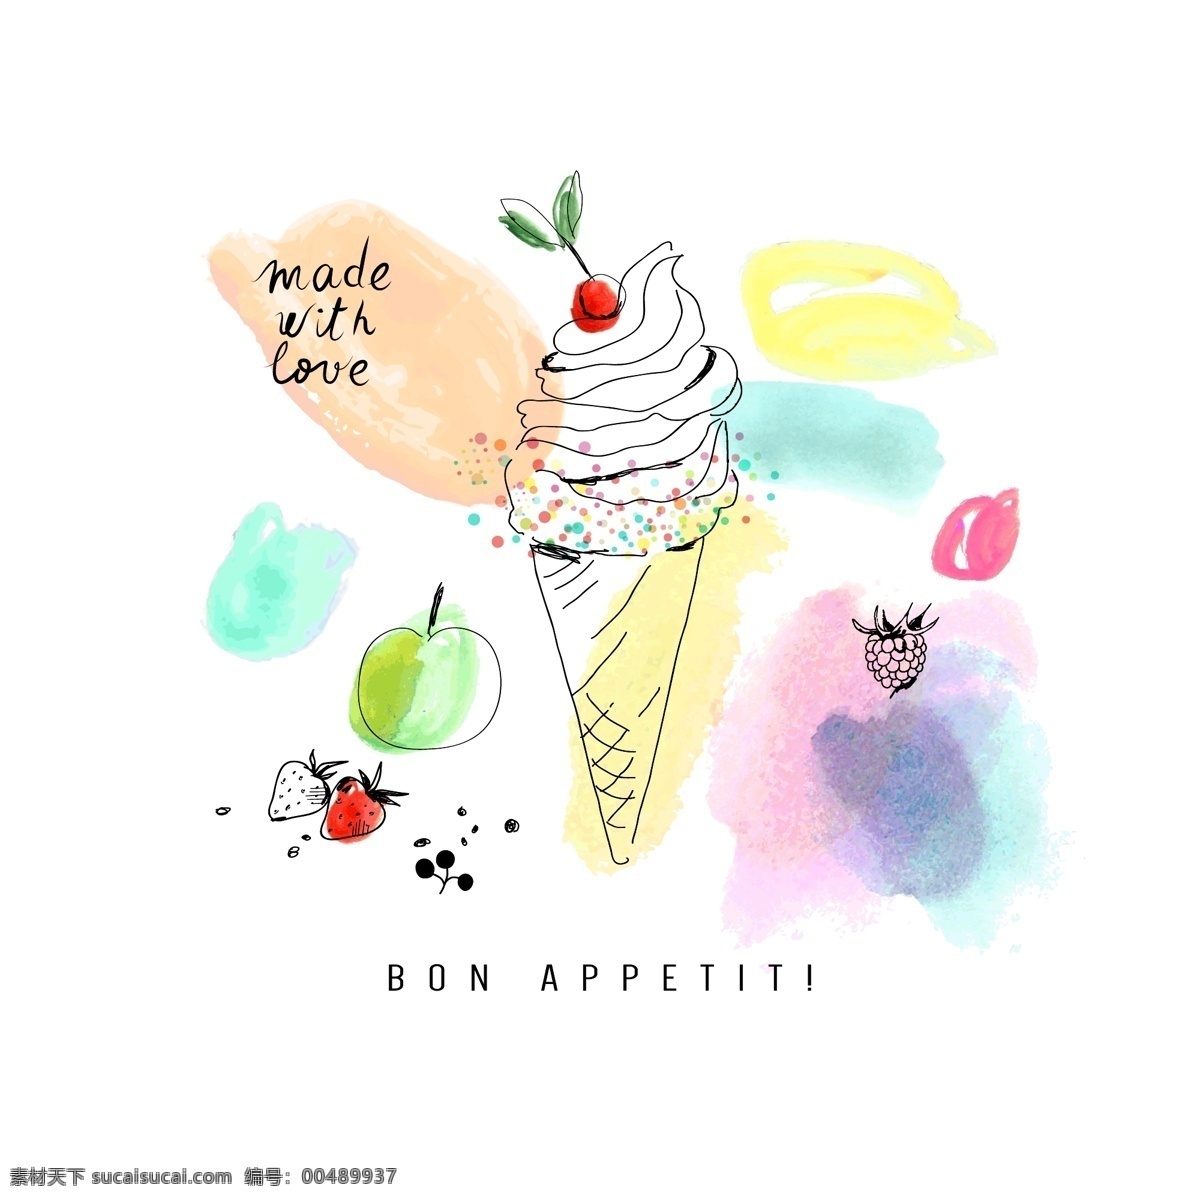 夏日 水彩 冷饮 图案 创意设计 卡通简约 简笔图案 冰淇淋 冰棒 水果 颜料 文化艺术 绘画书法